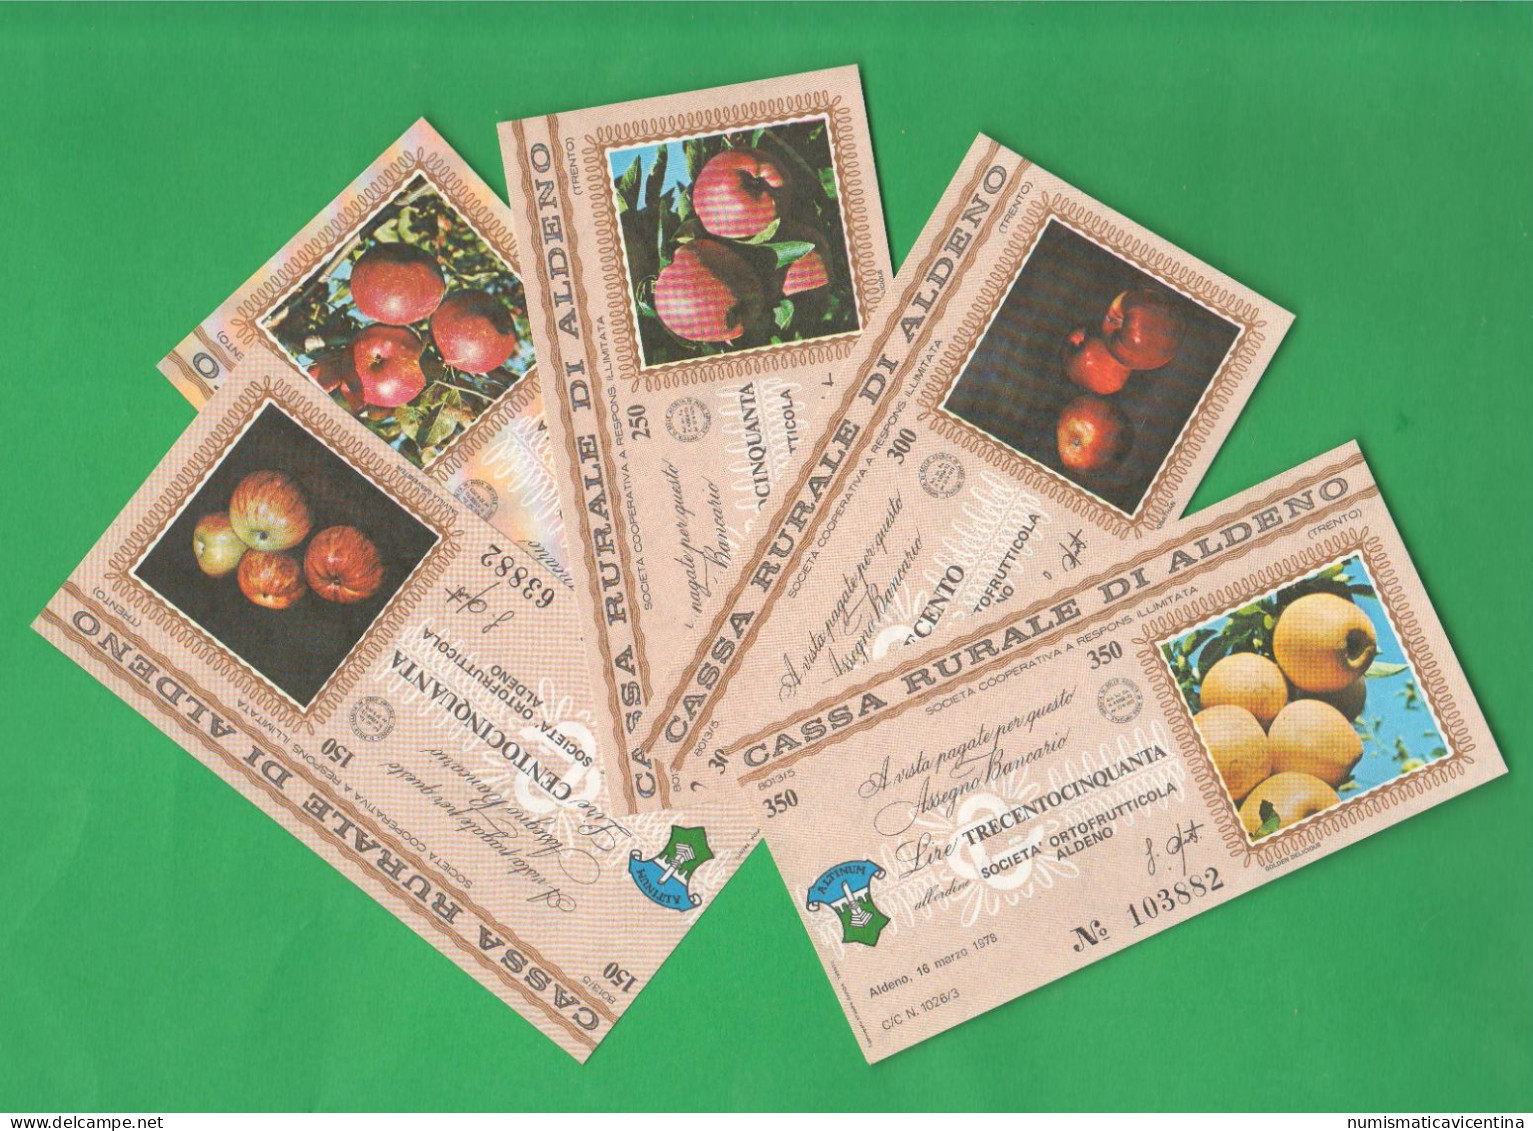 Trento Aldeno Cassa Rurale 5 Miniassegni 1978 Da 150 200 250 300 350 Lire Mele Apples Pommes - [10] Checks And Mini-checks